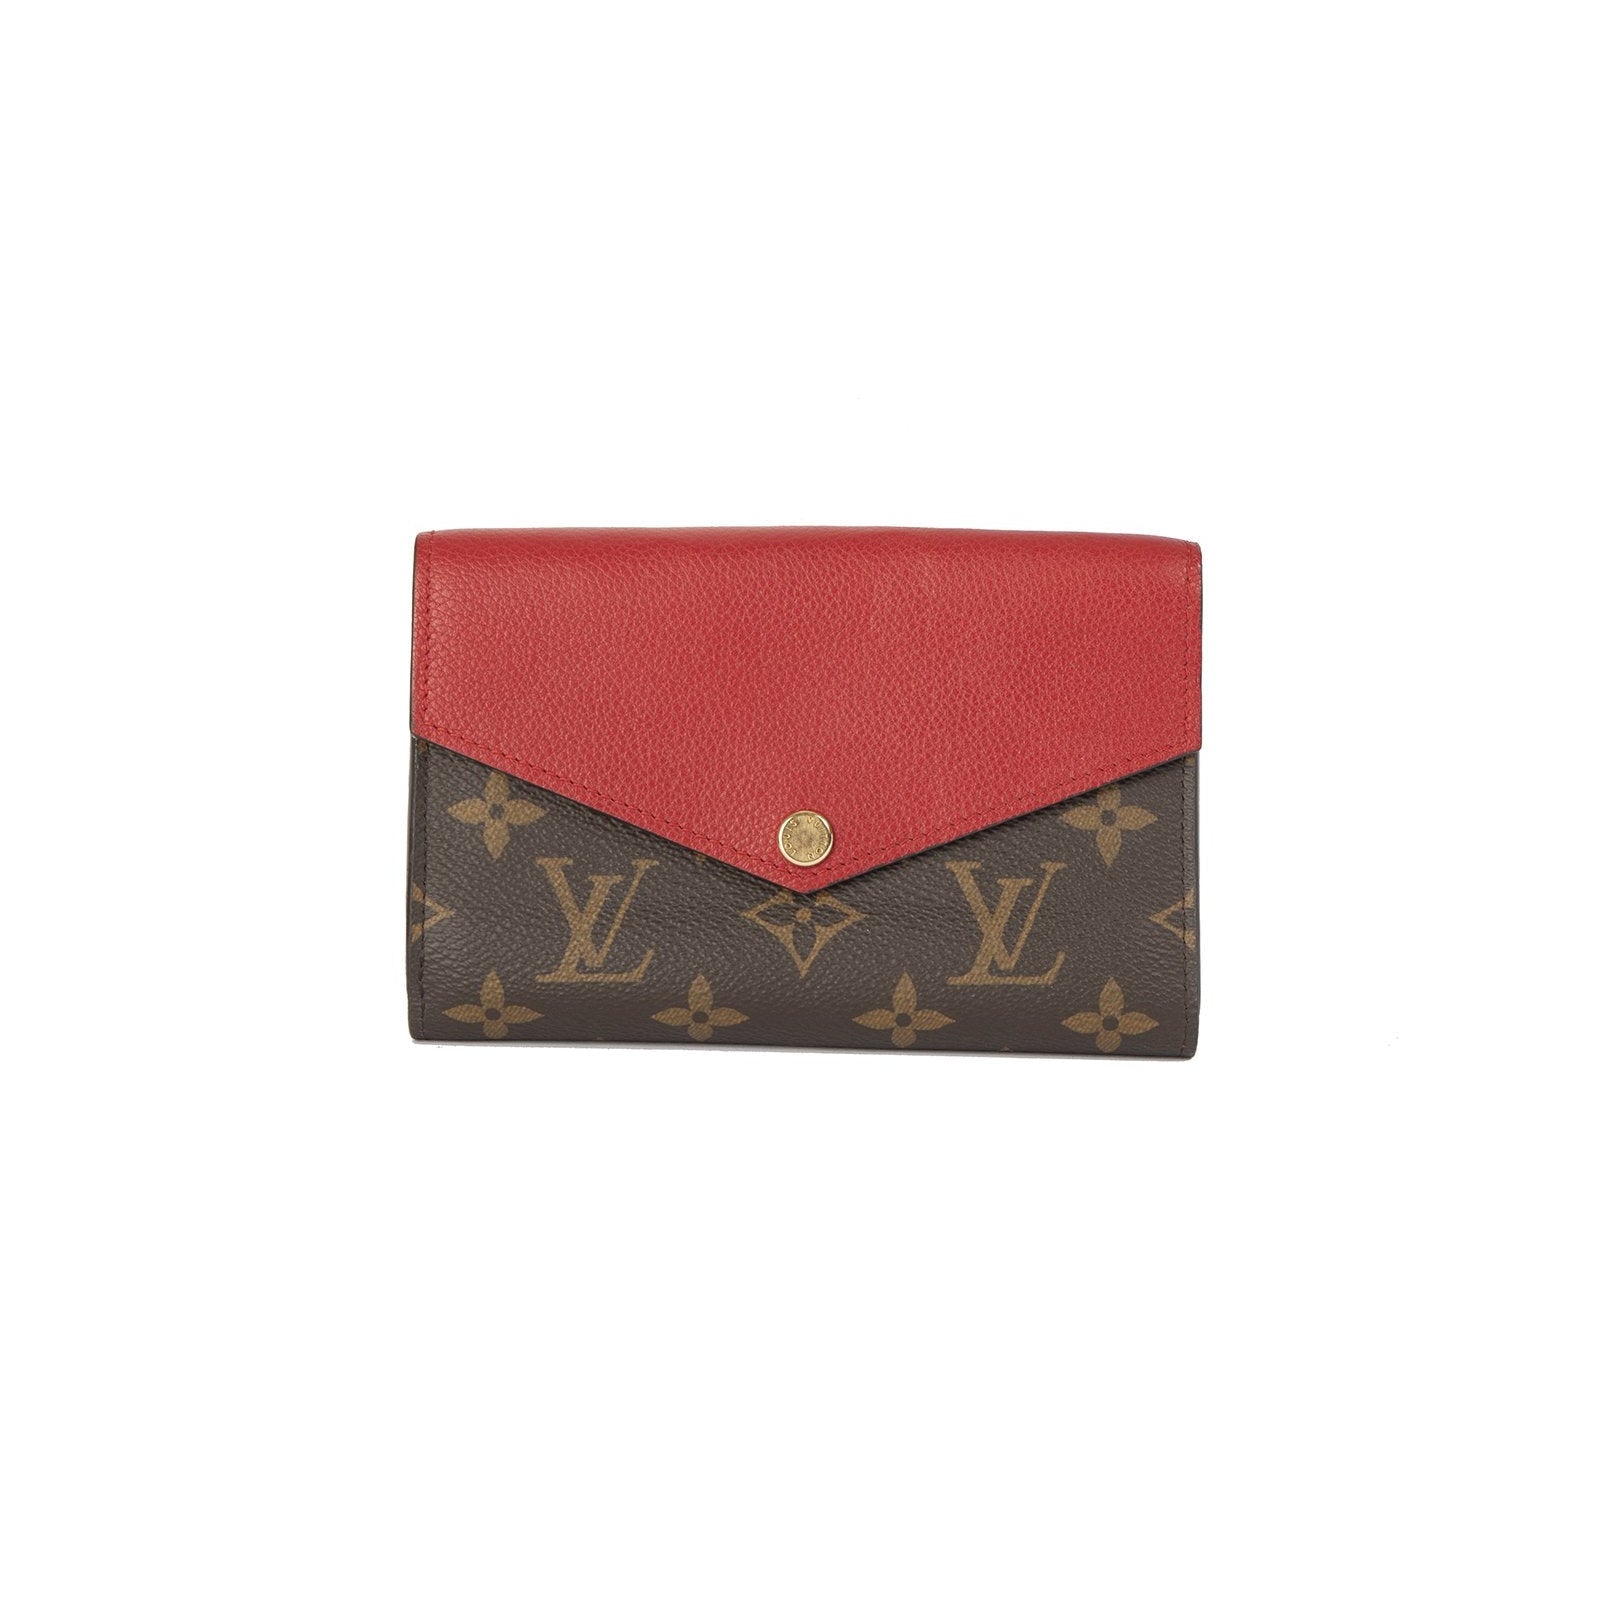 Louis Vuitton Wallet Pallas Compact 